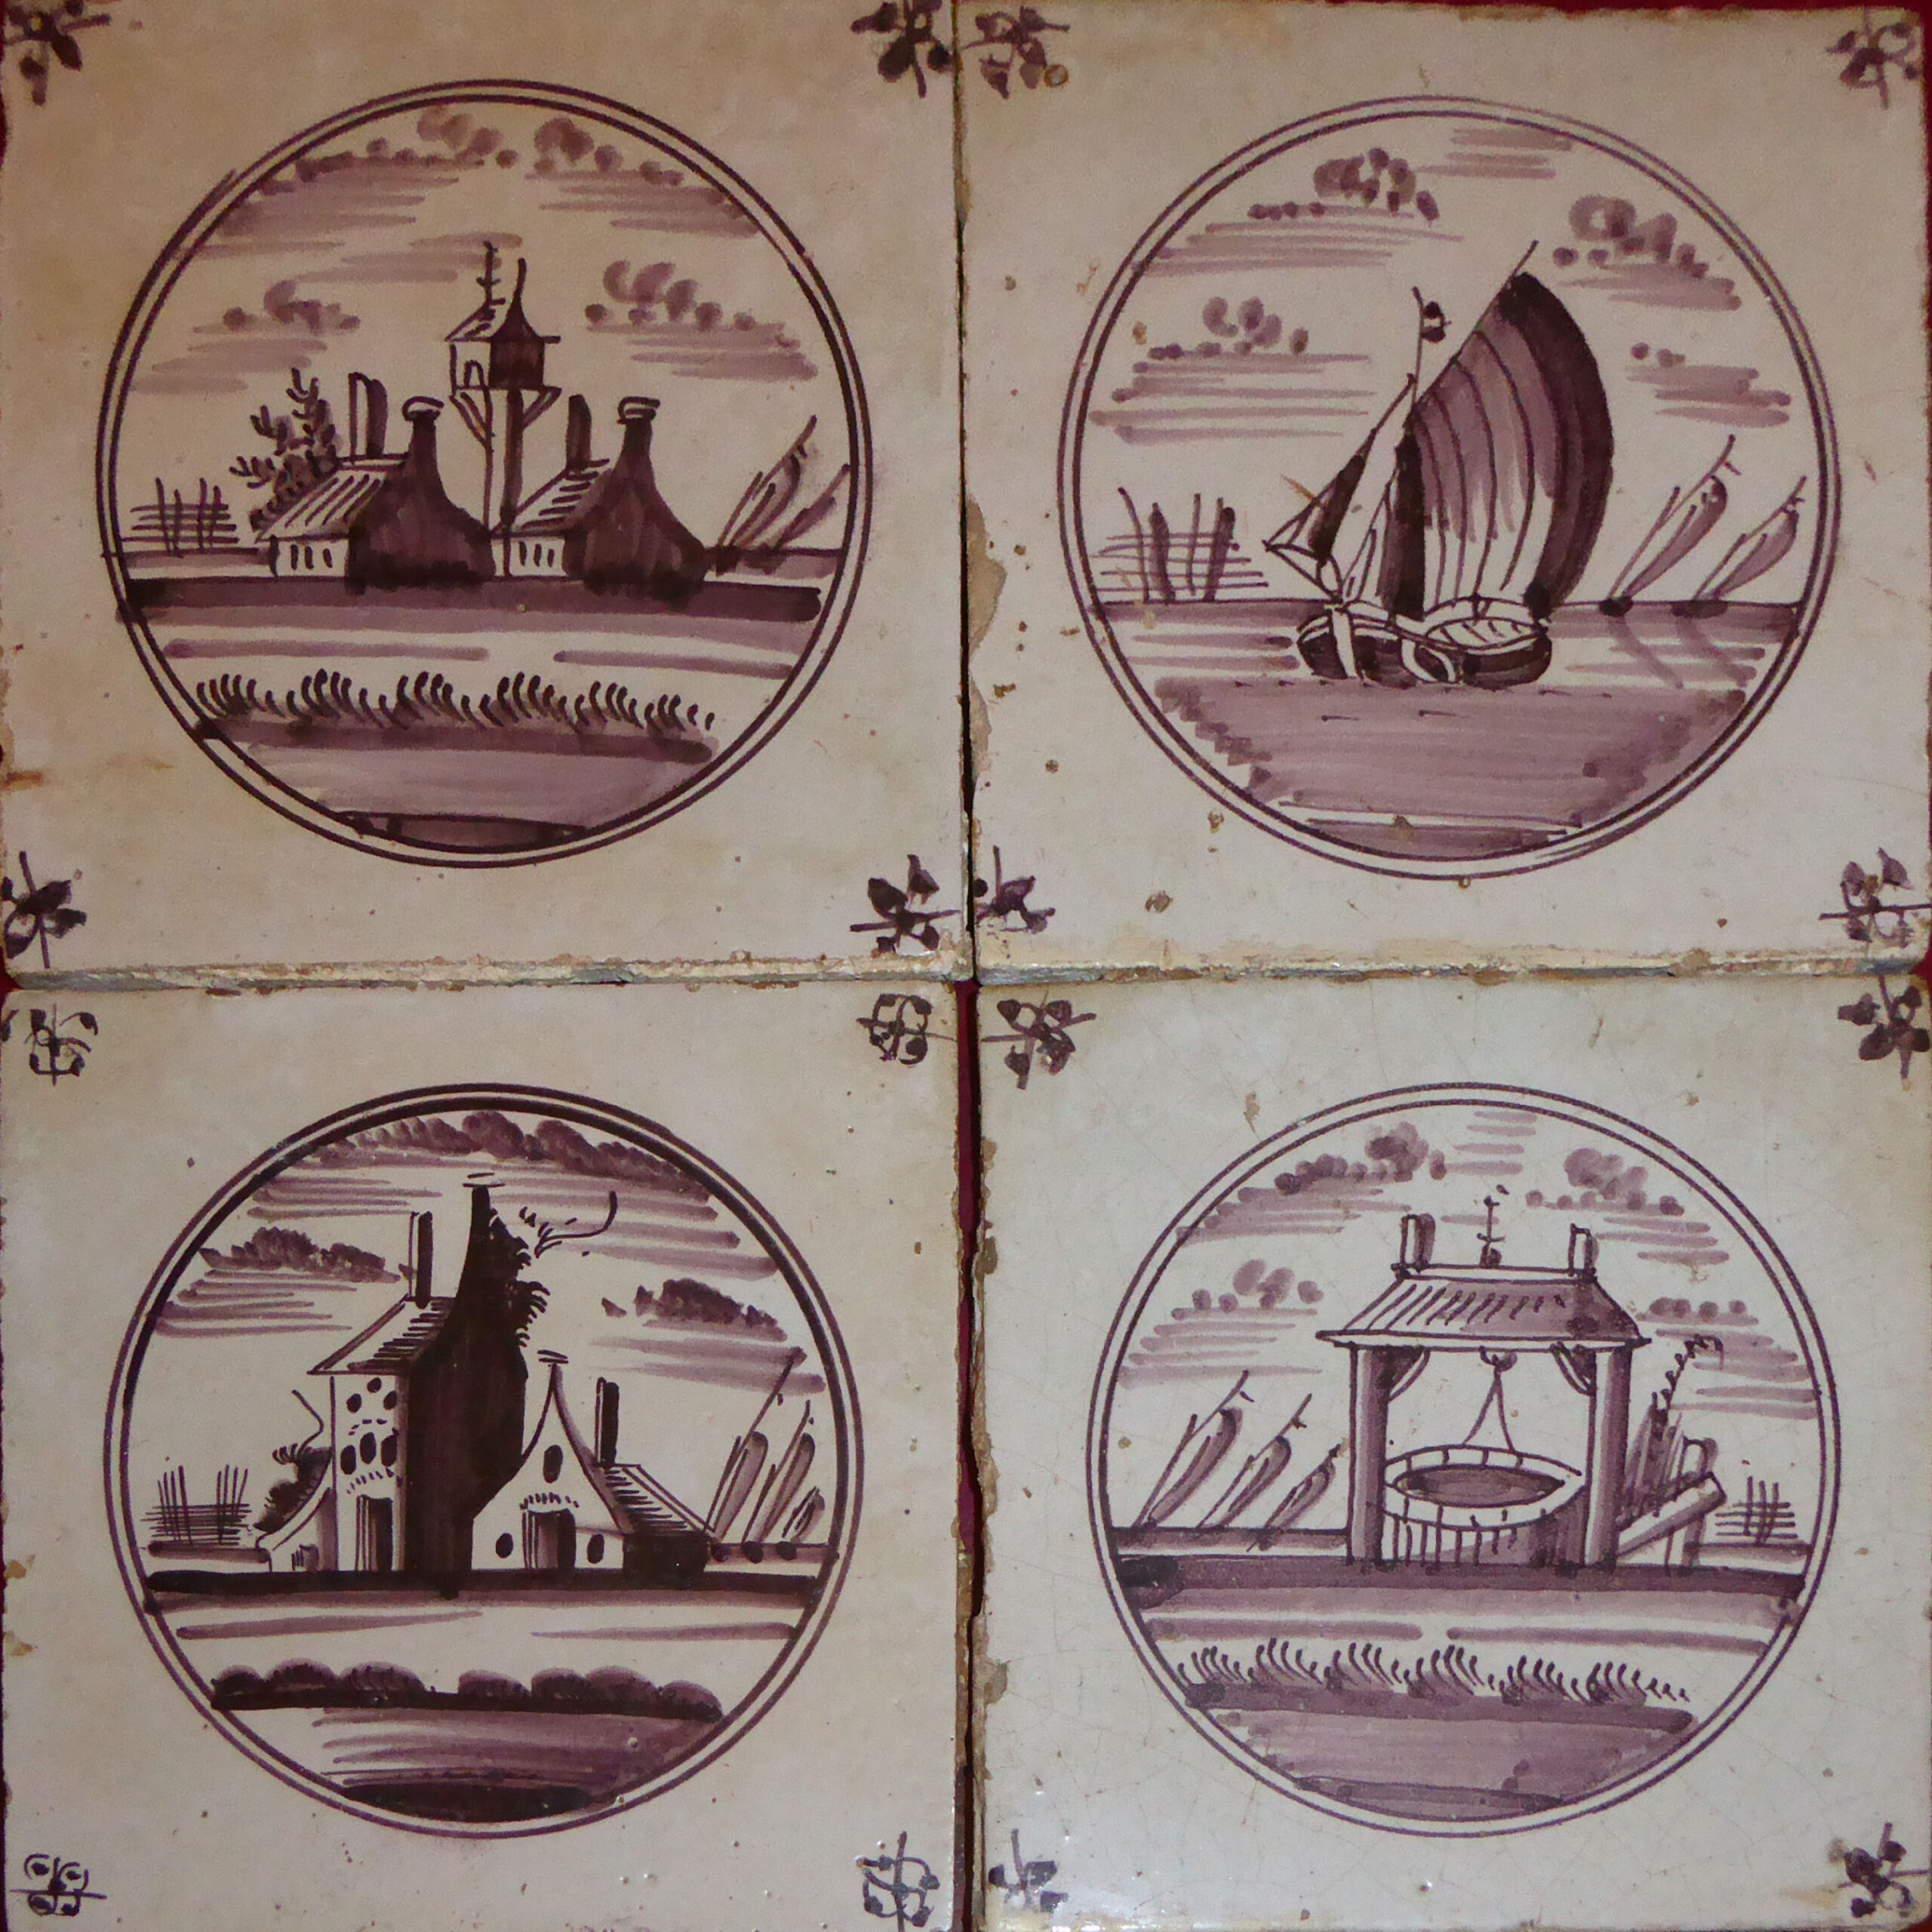 00772. Panel de cuatro azulejos con motivos “de paisaje”. Colección García Hidalgo. El Puerto de Santa María. Cádiz